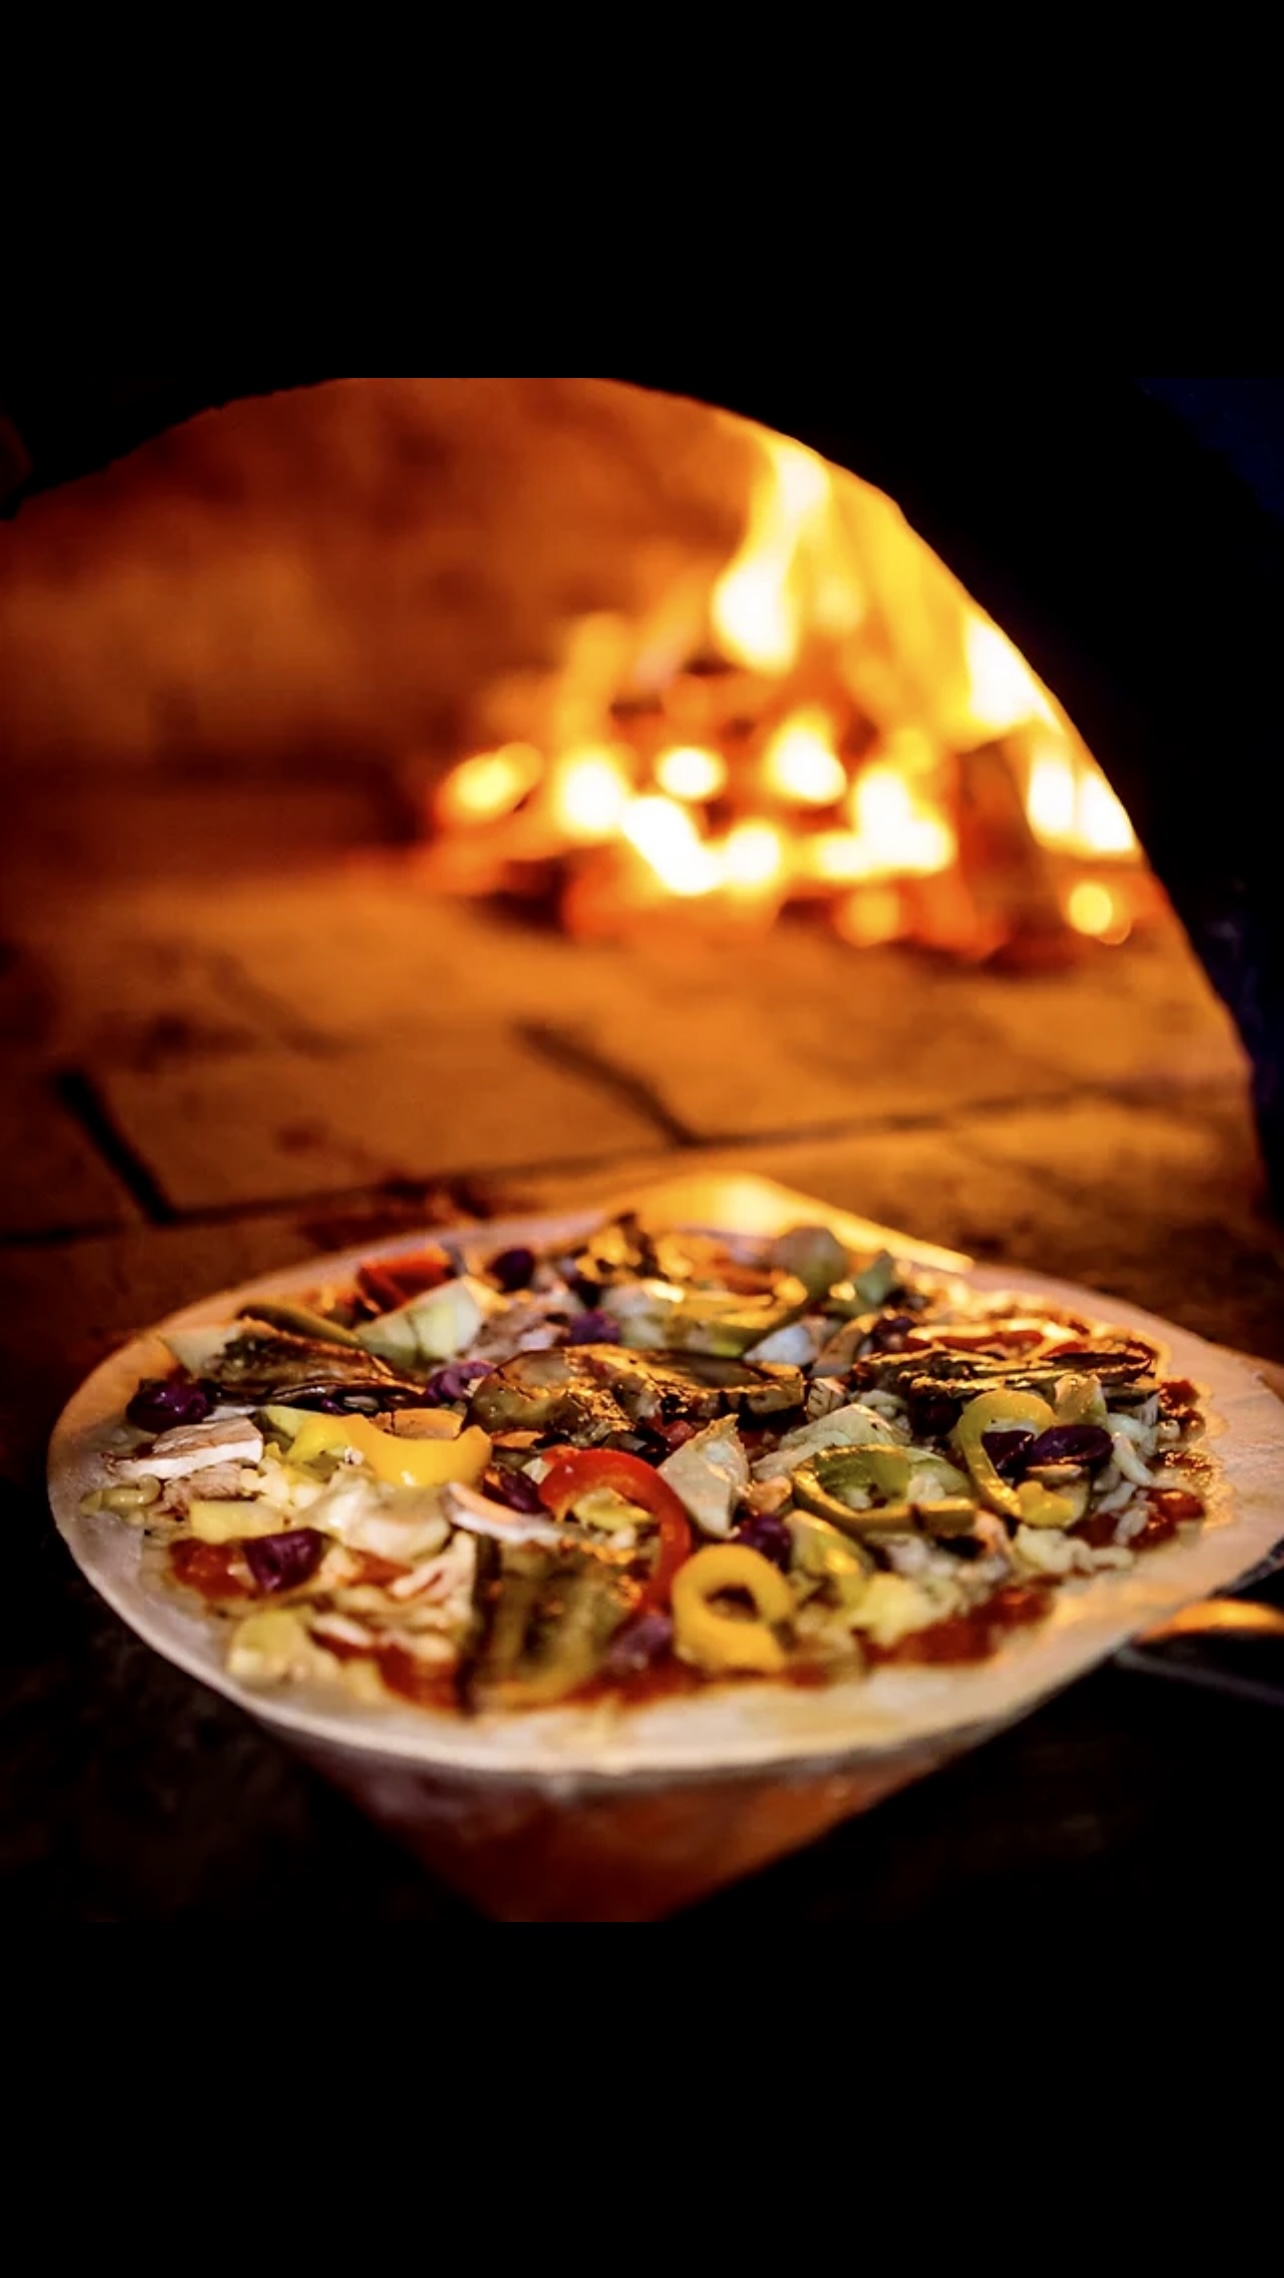 La Medusa accueil et gastronomie vous propose une délicieuse pizza cuite au four à bois.